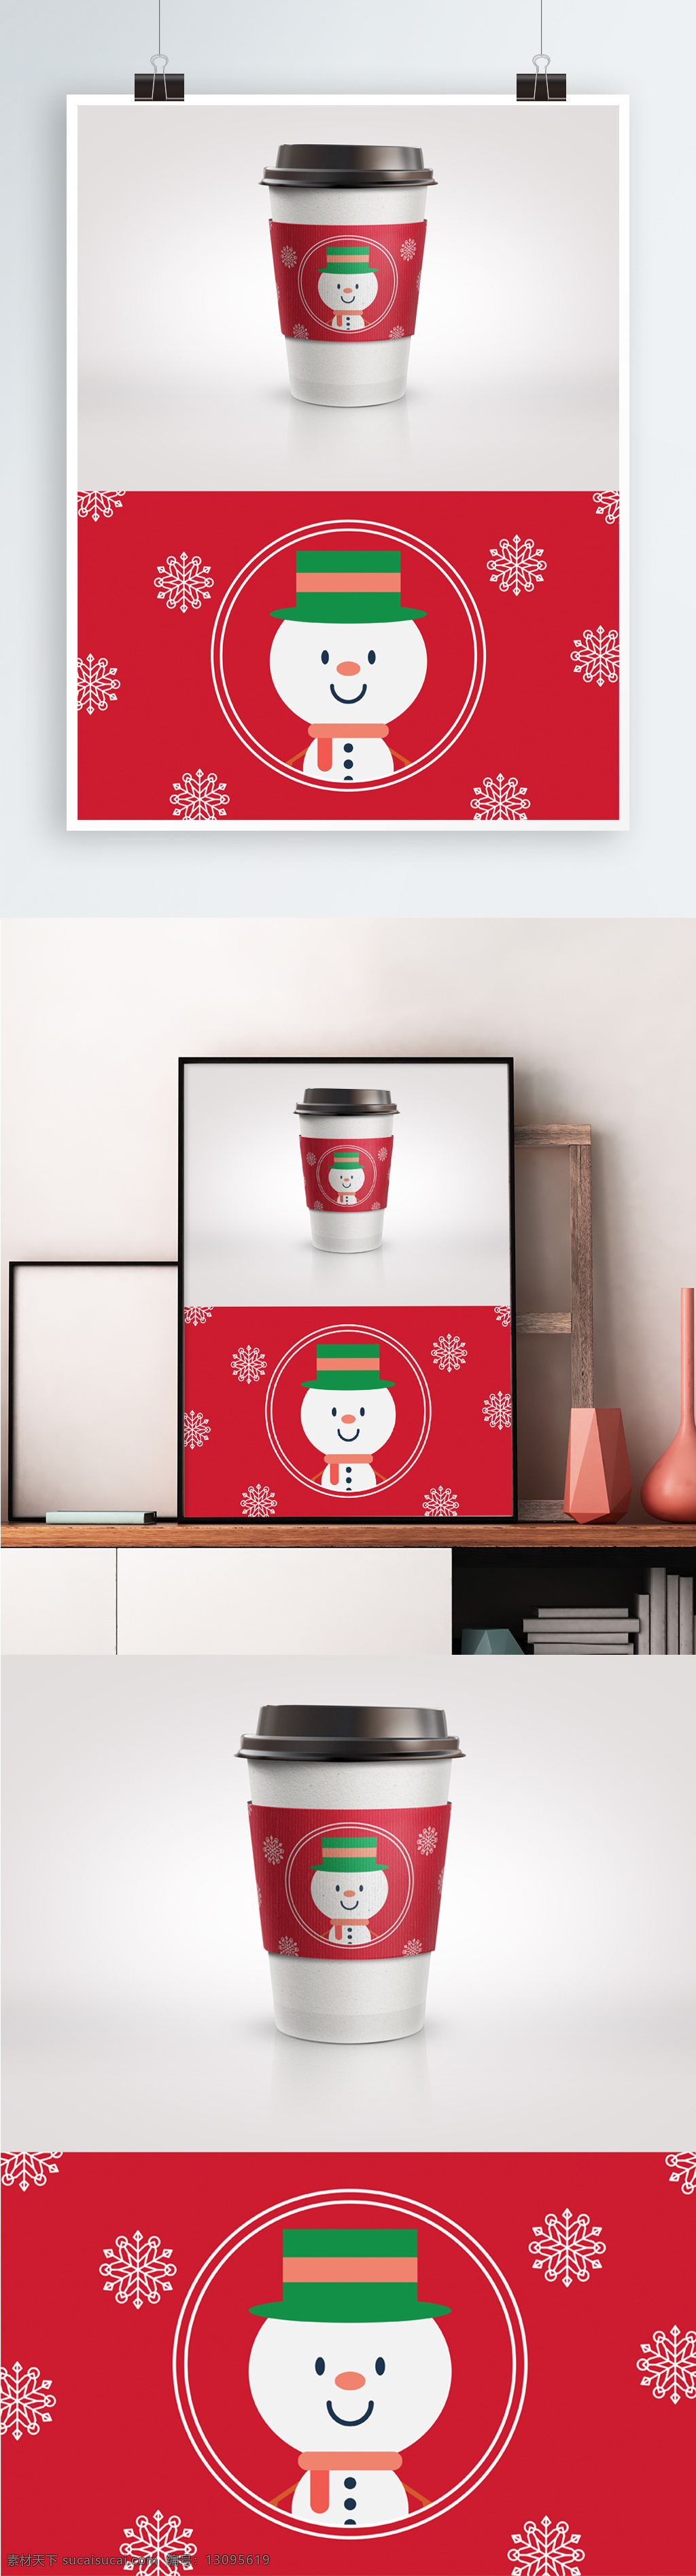 圣诞节 红色 特别 版 咖啡杯 套 大红 雪花 雪人 特别版 杯套 节日 包装